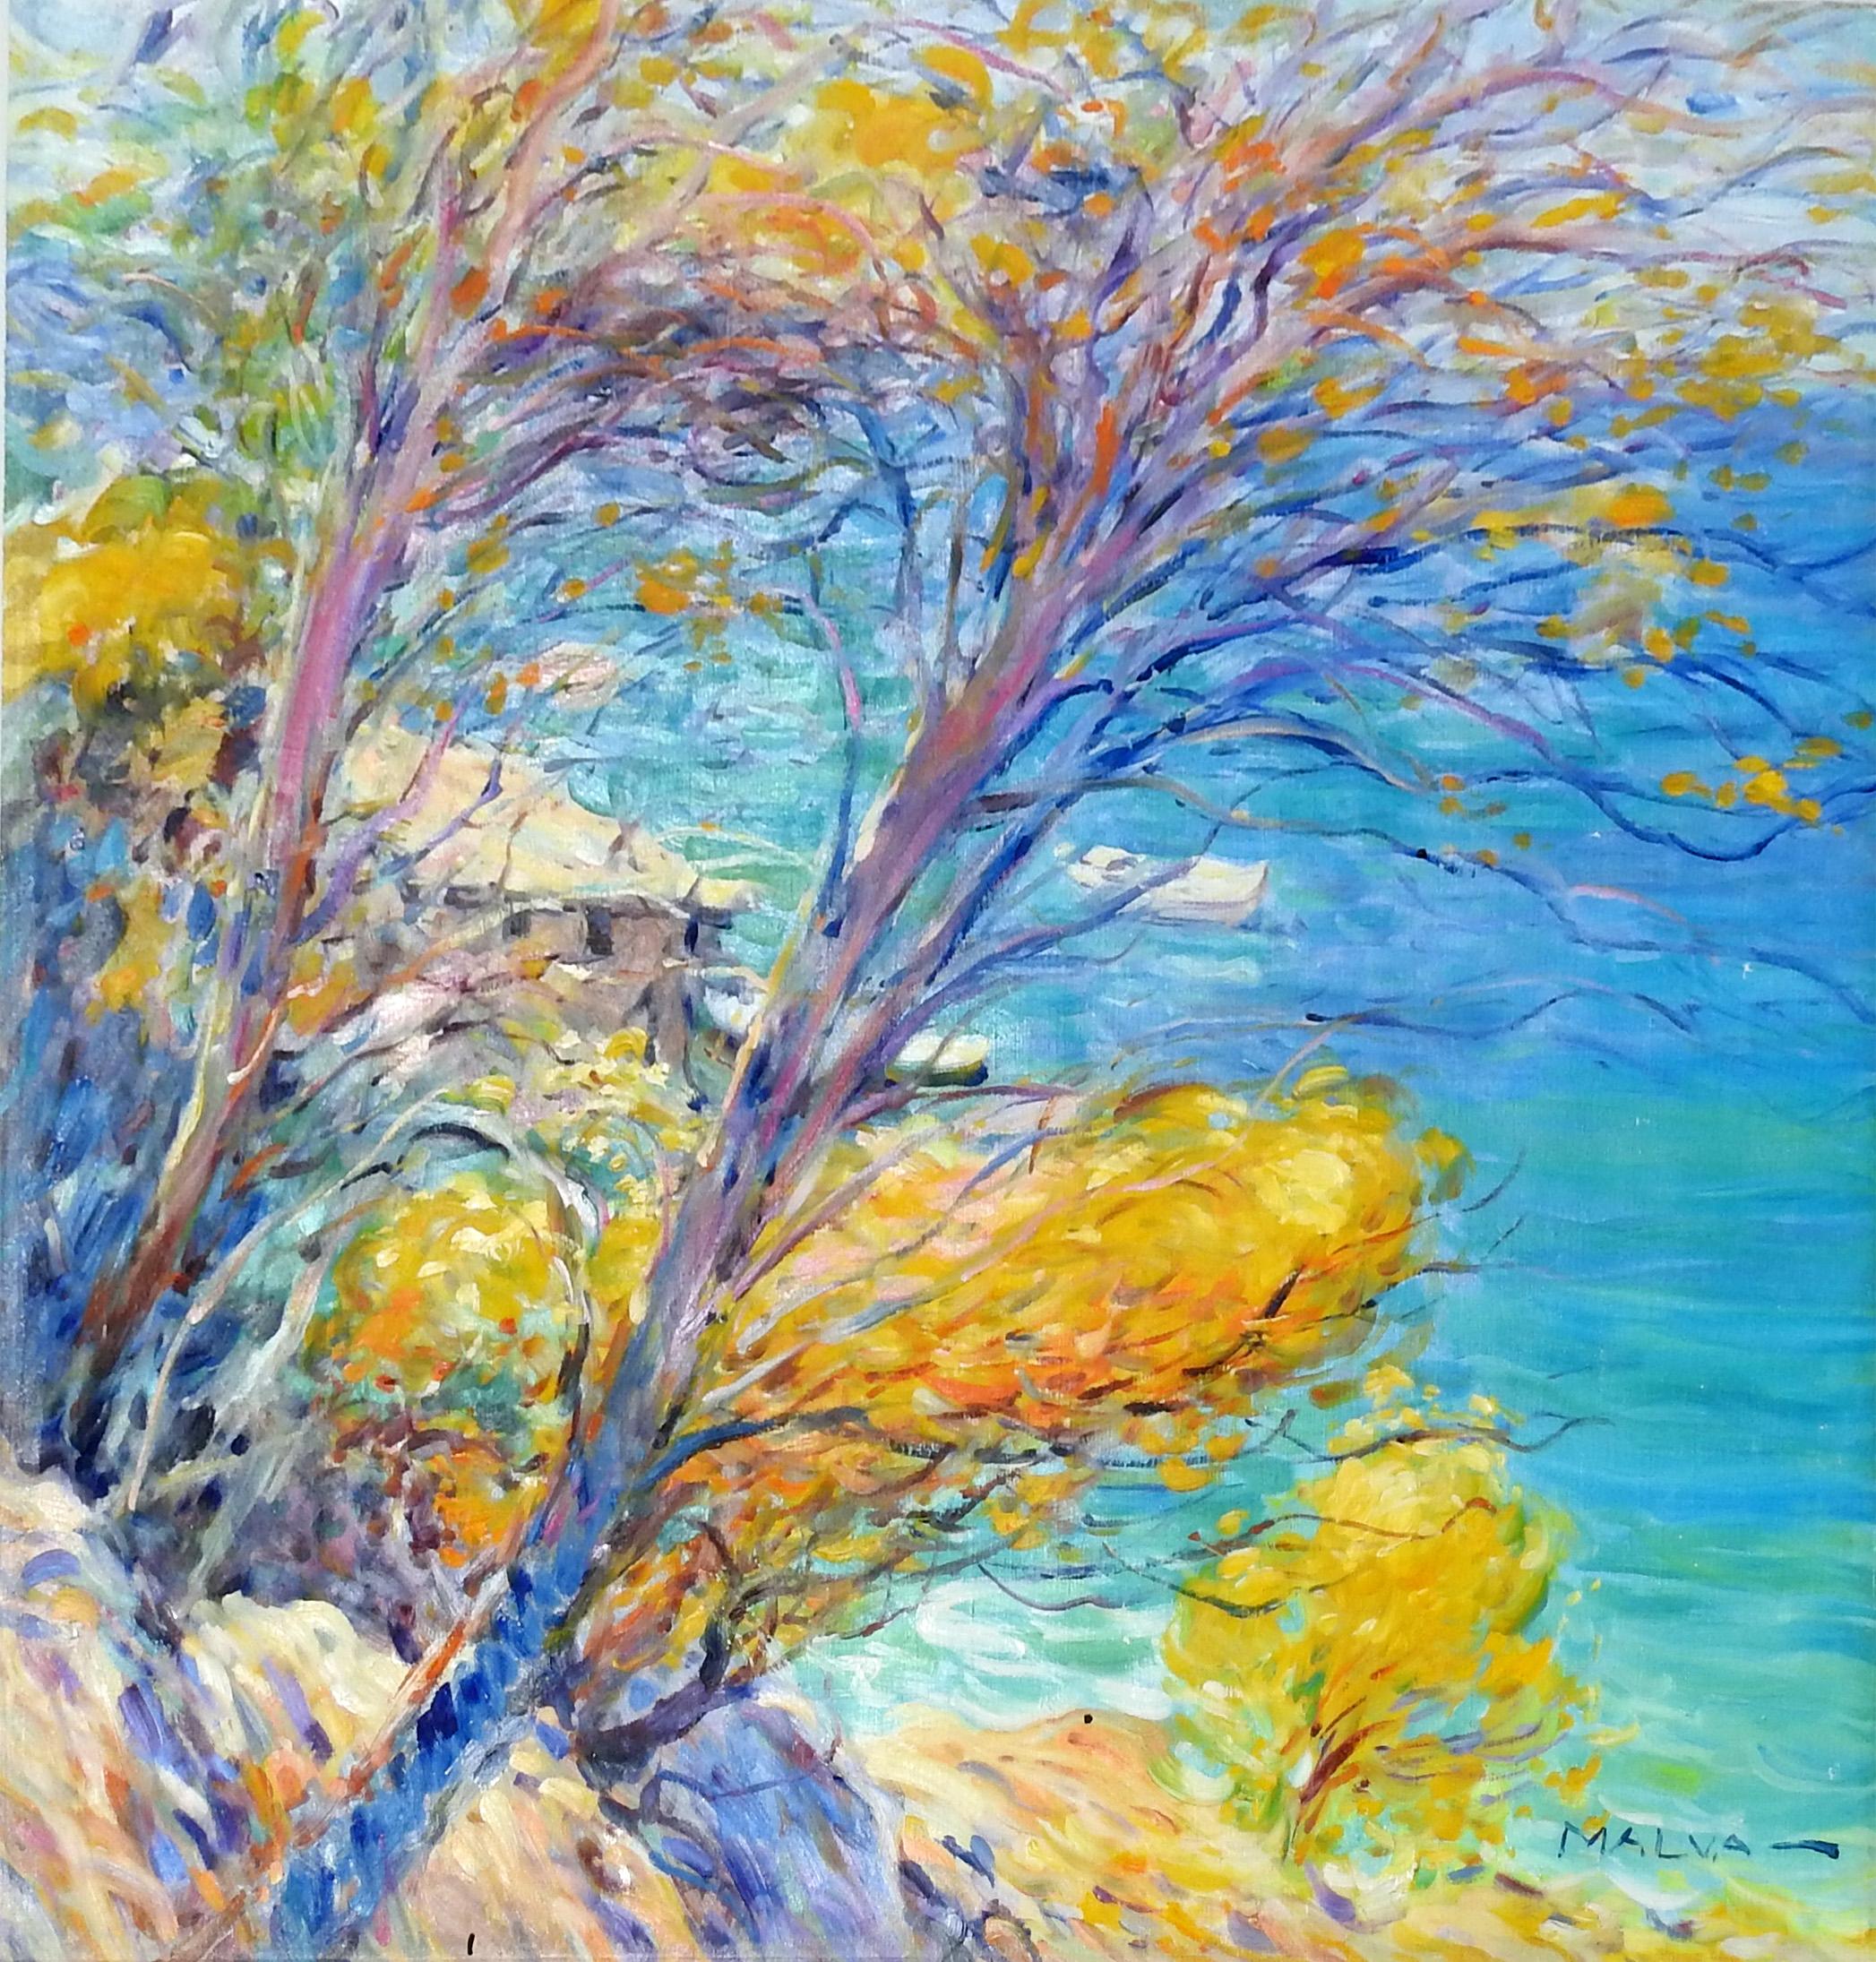 "Riviera Coast", Malva, Original Oil/Canvas, Impressionist Landscape, 32x32 in. 